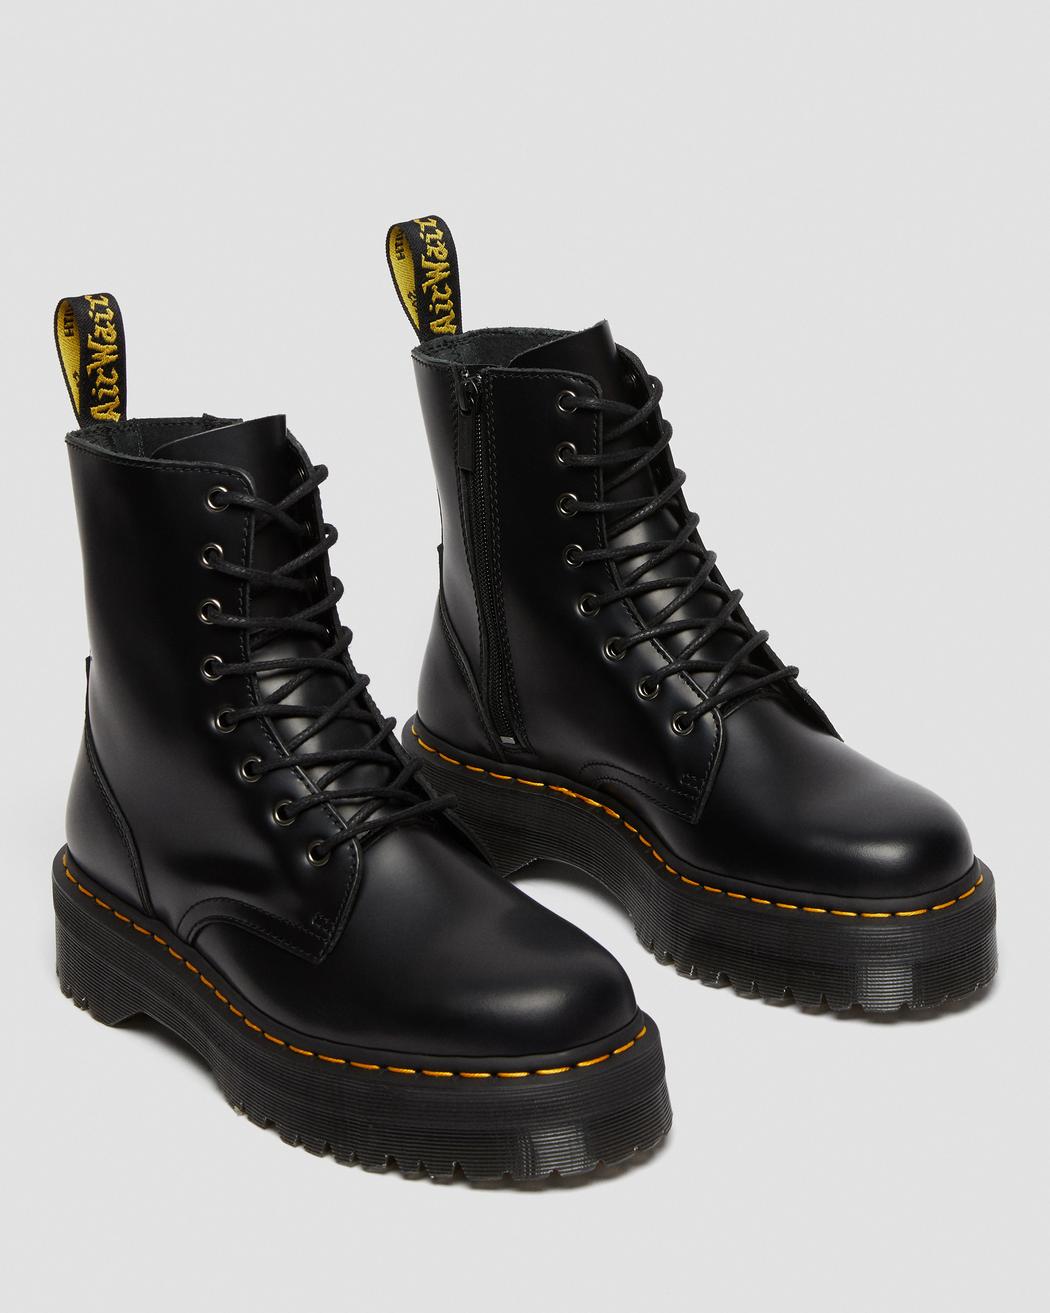 Jadon Black Smooth Leather Platform Boots DM15265001 - 3